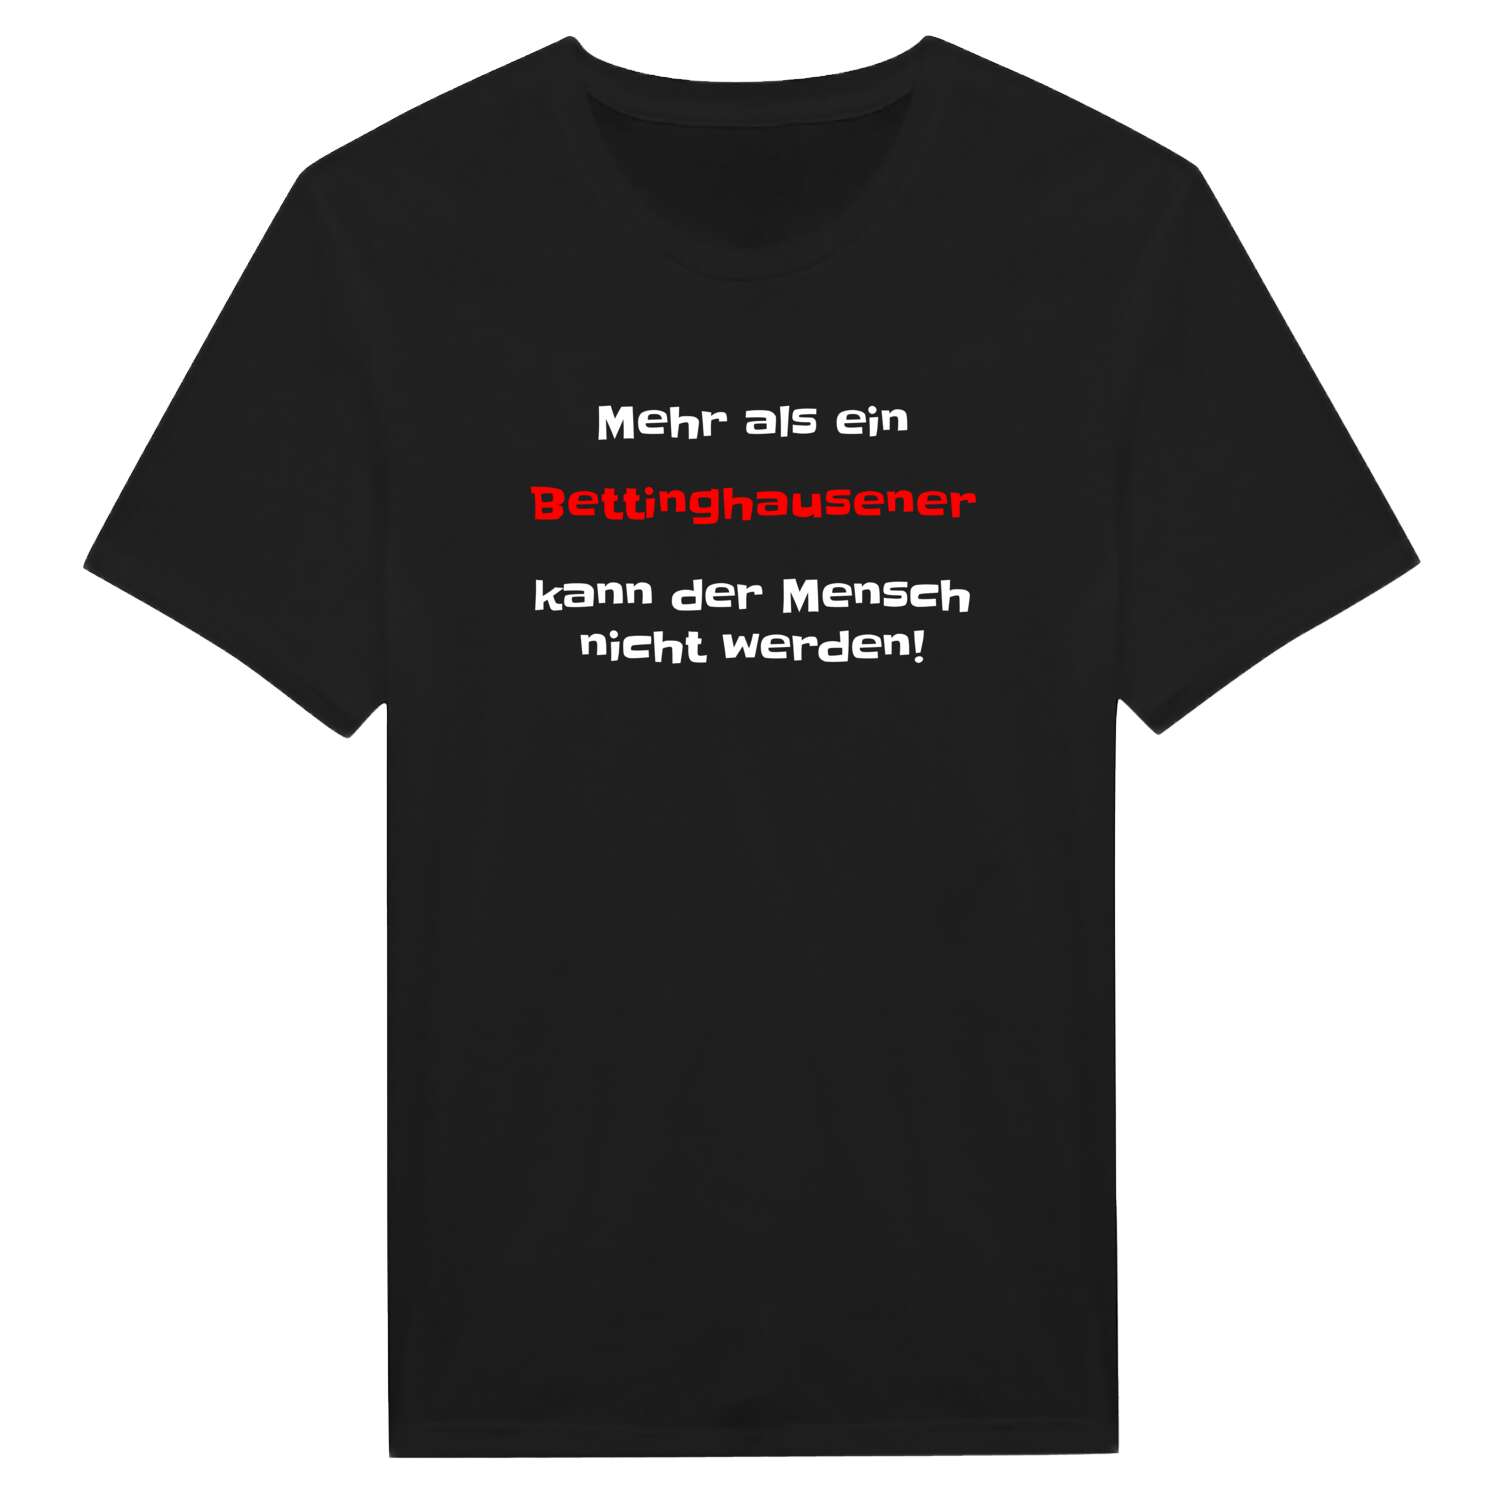 Bettinghausen T-Shirt »Mehr als ein«